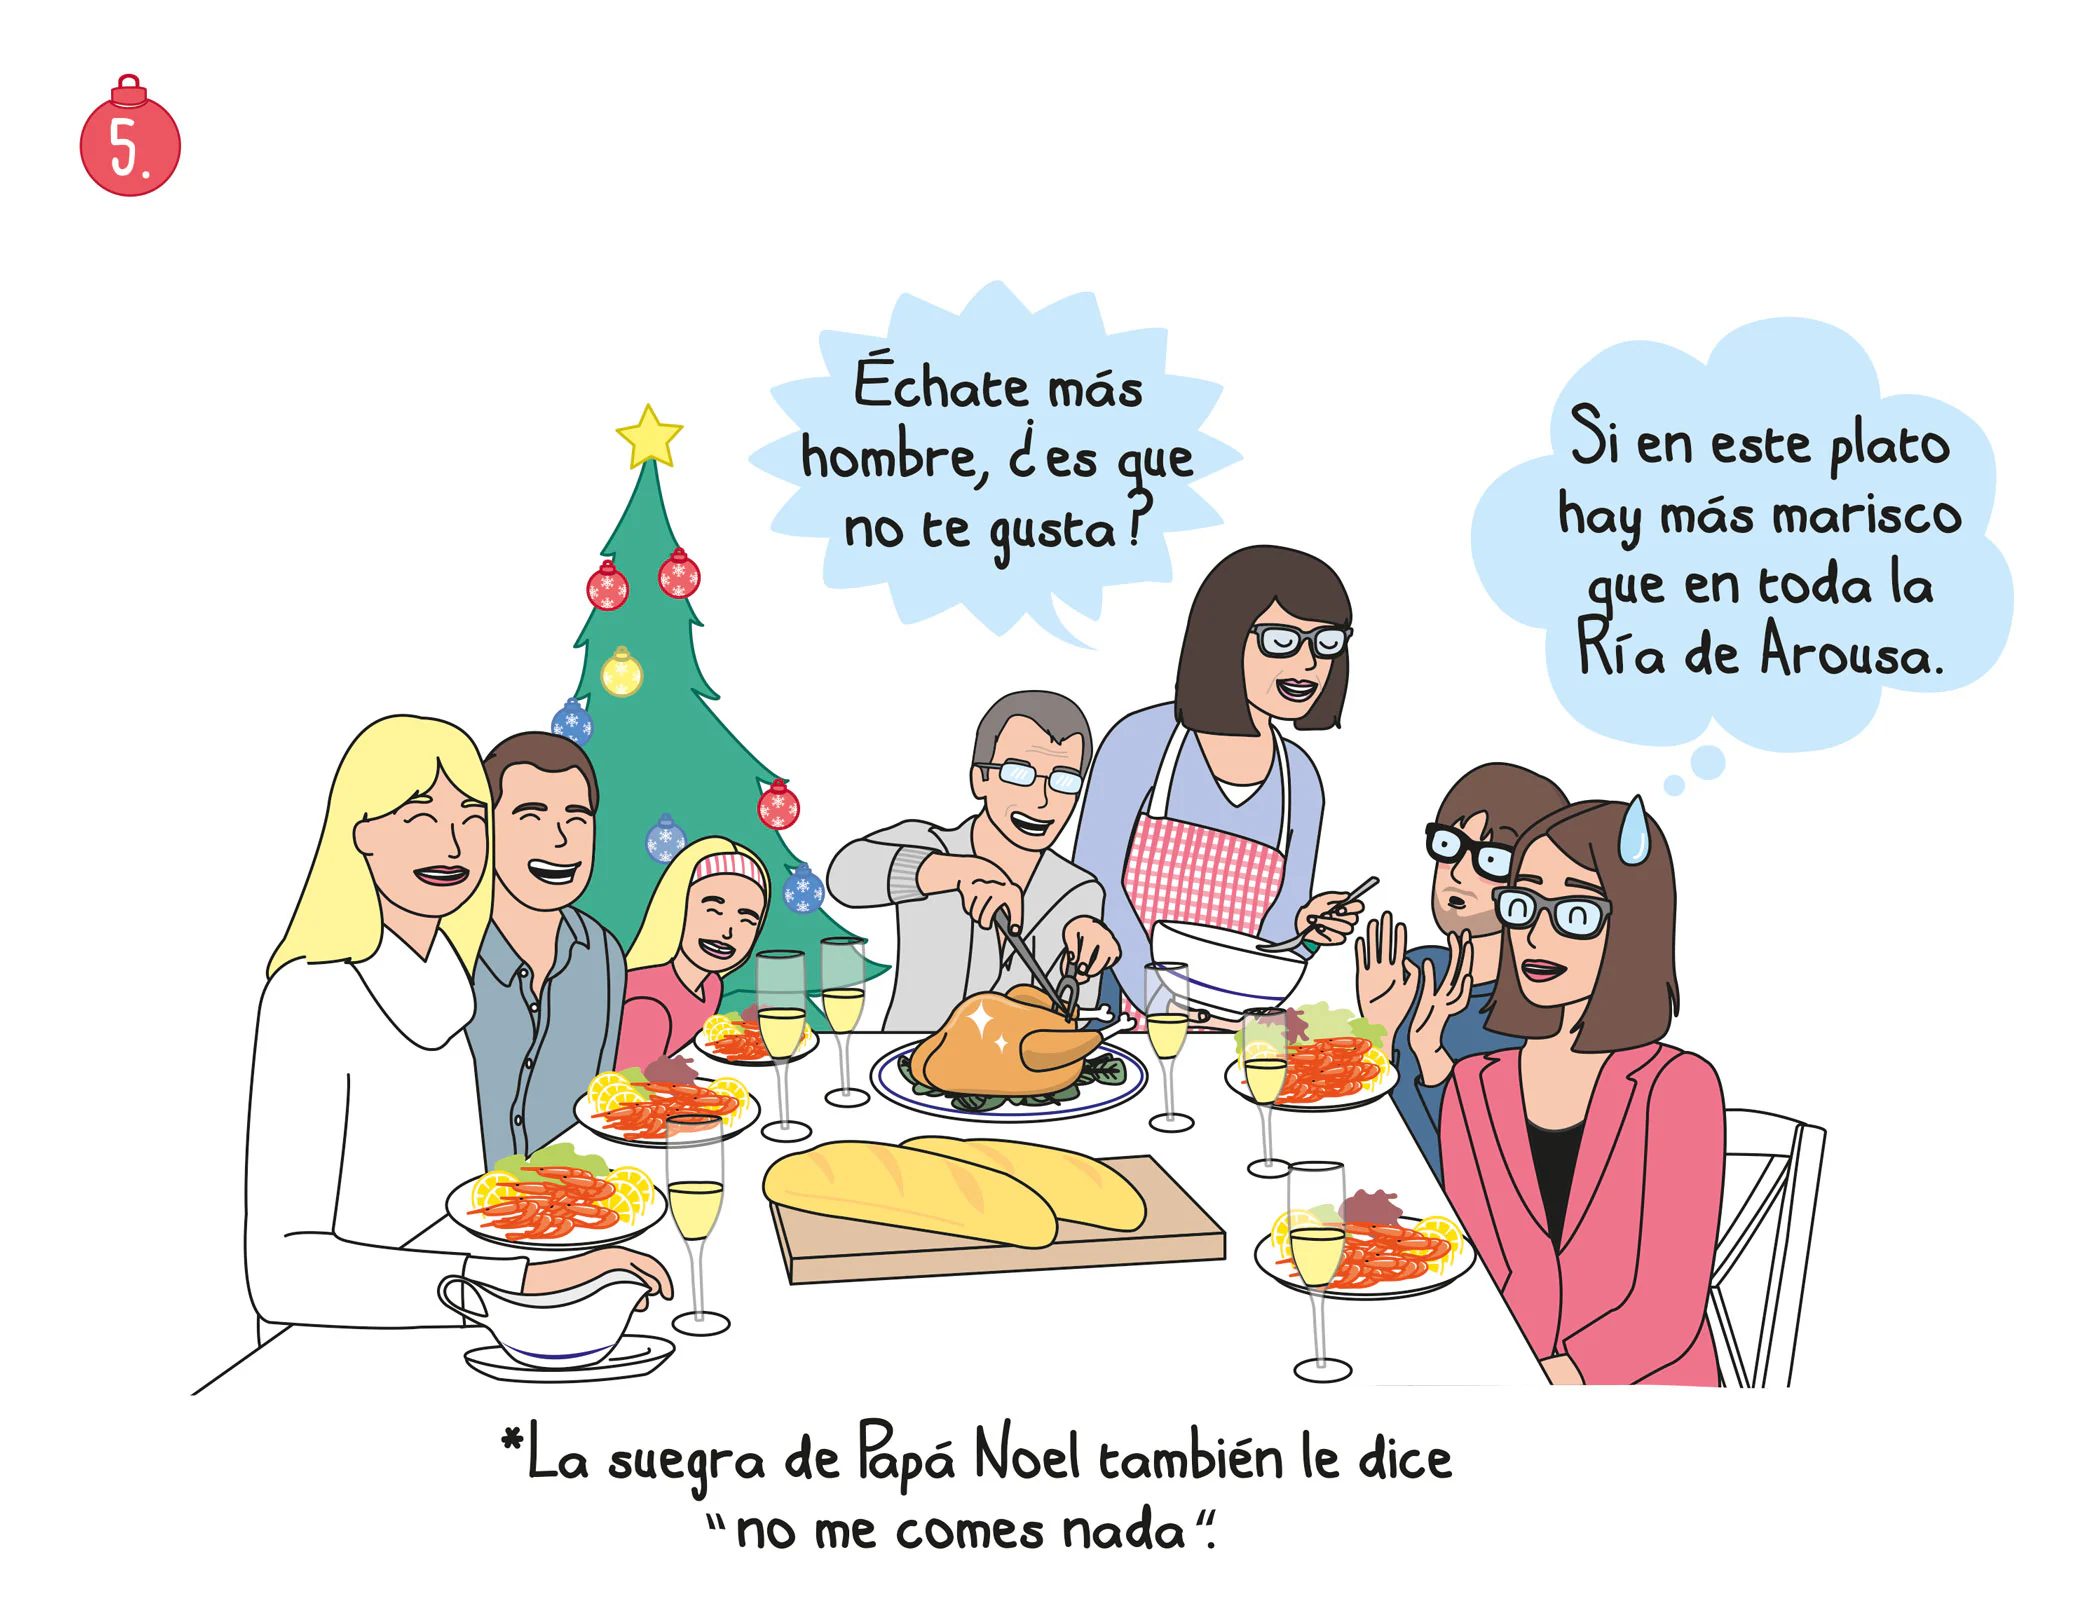 5. Navidad en pareja: cena con la familia política en la que jamás debes hablar de política